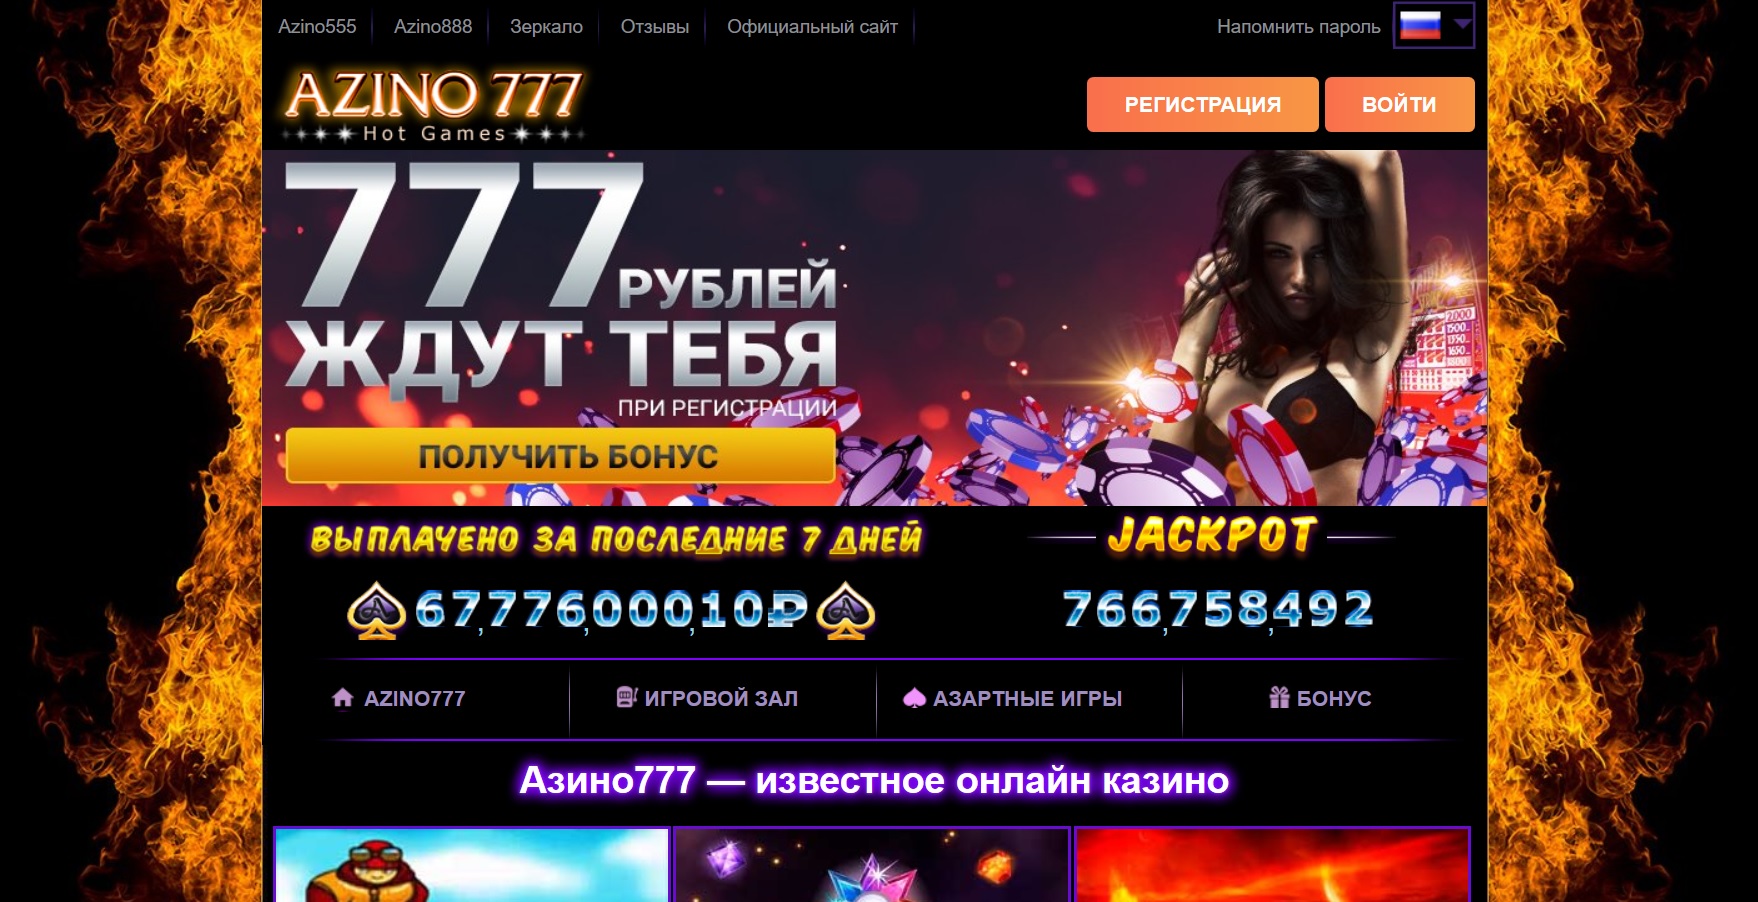 азино777 официальный сайт azino777 official ru com